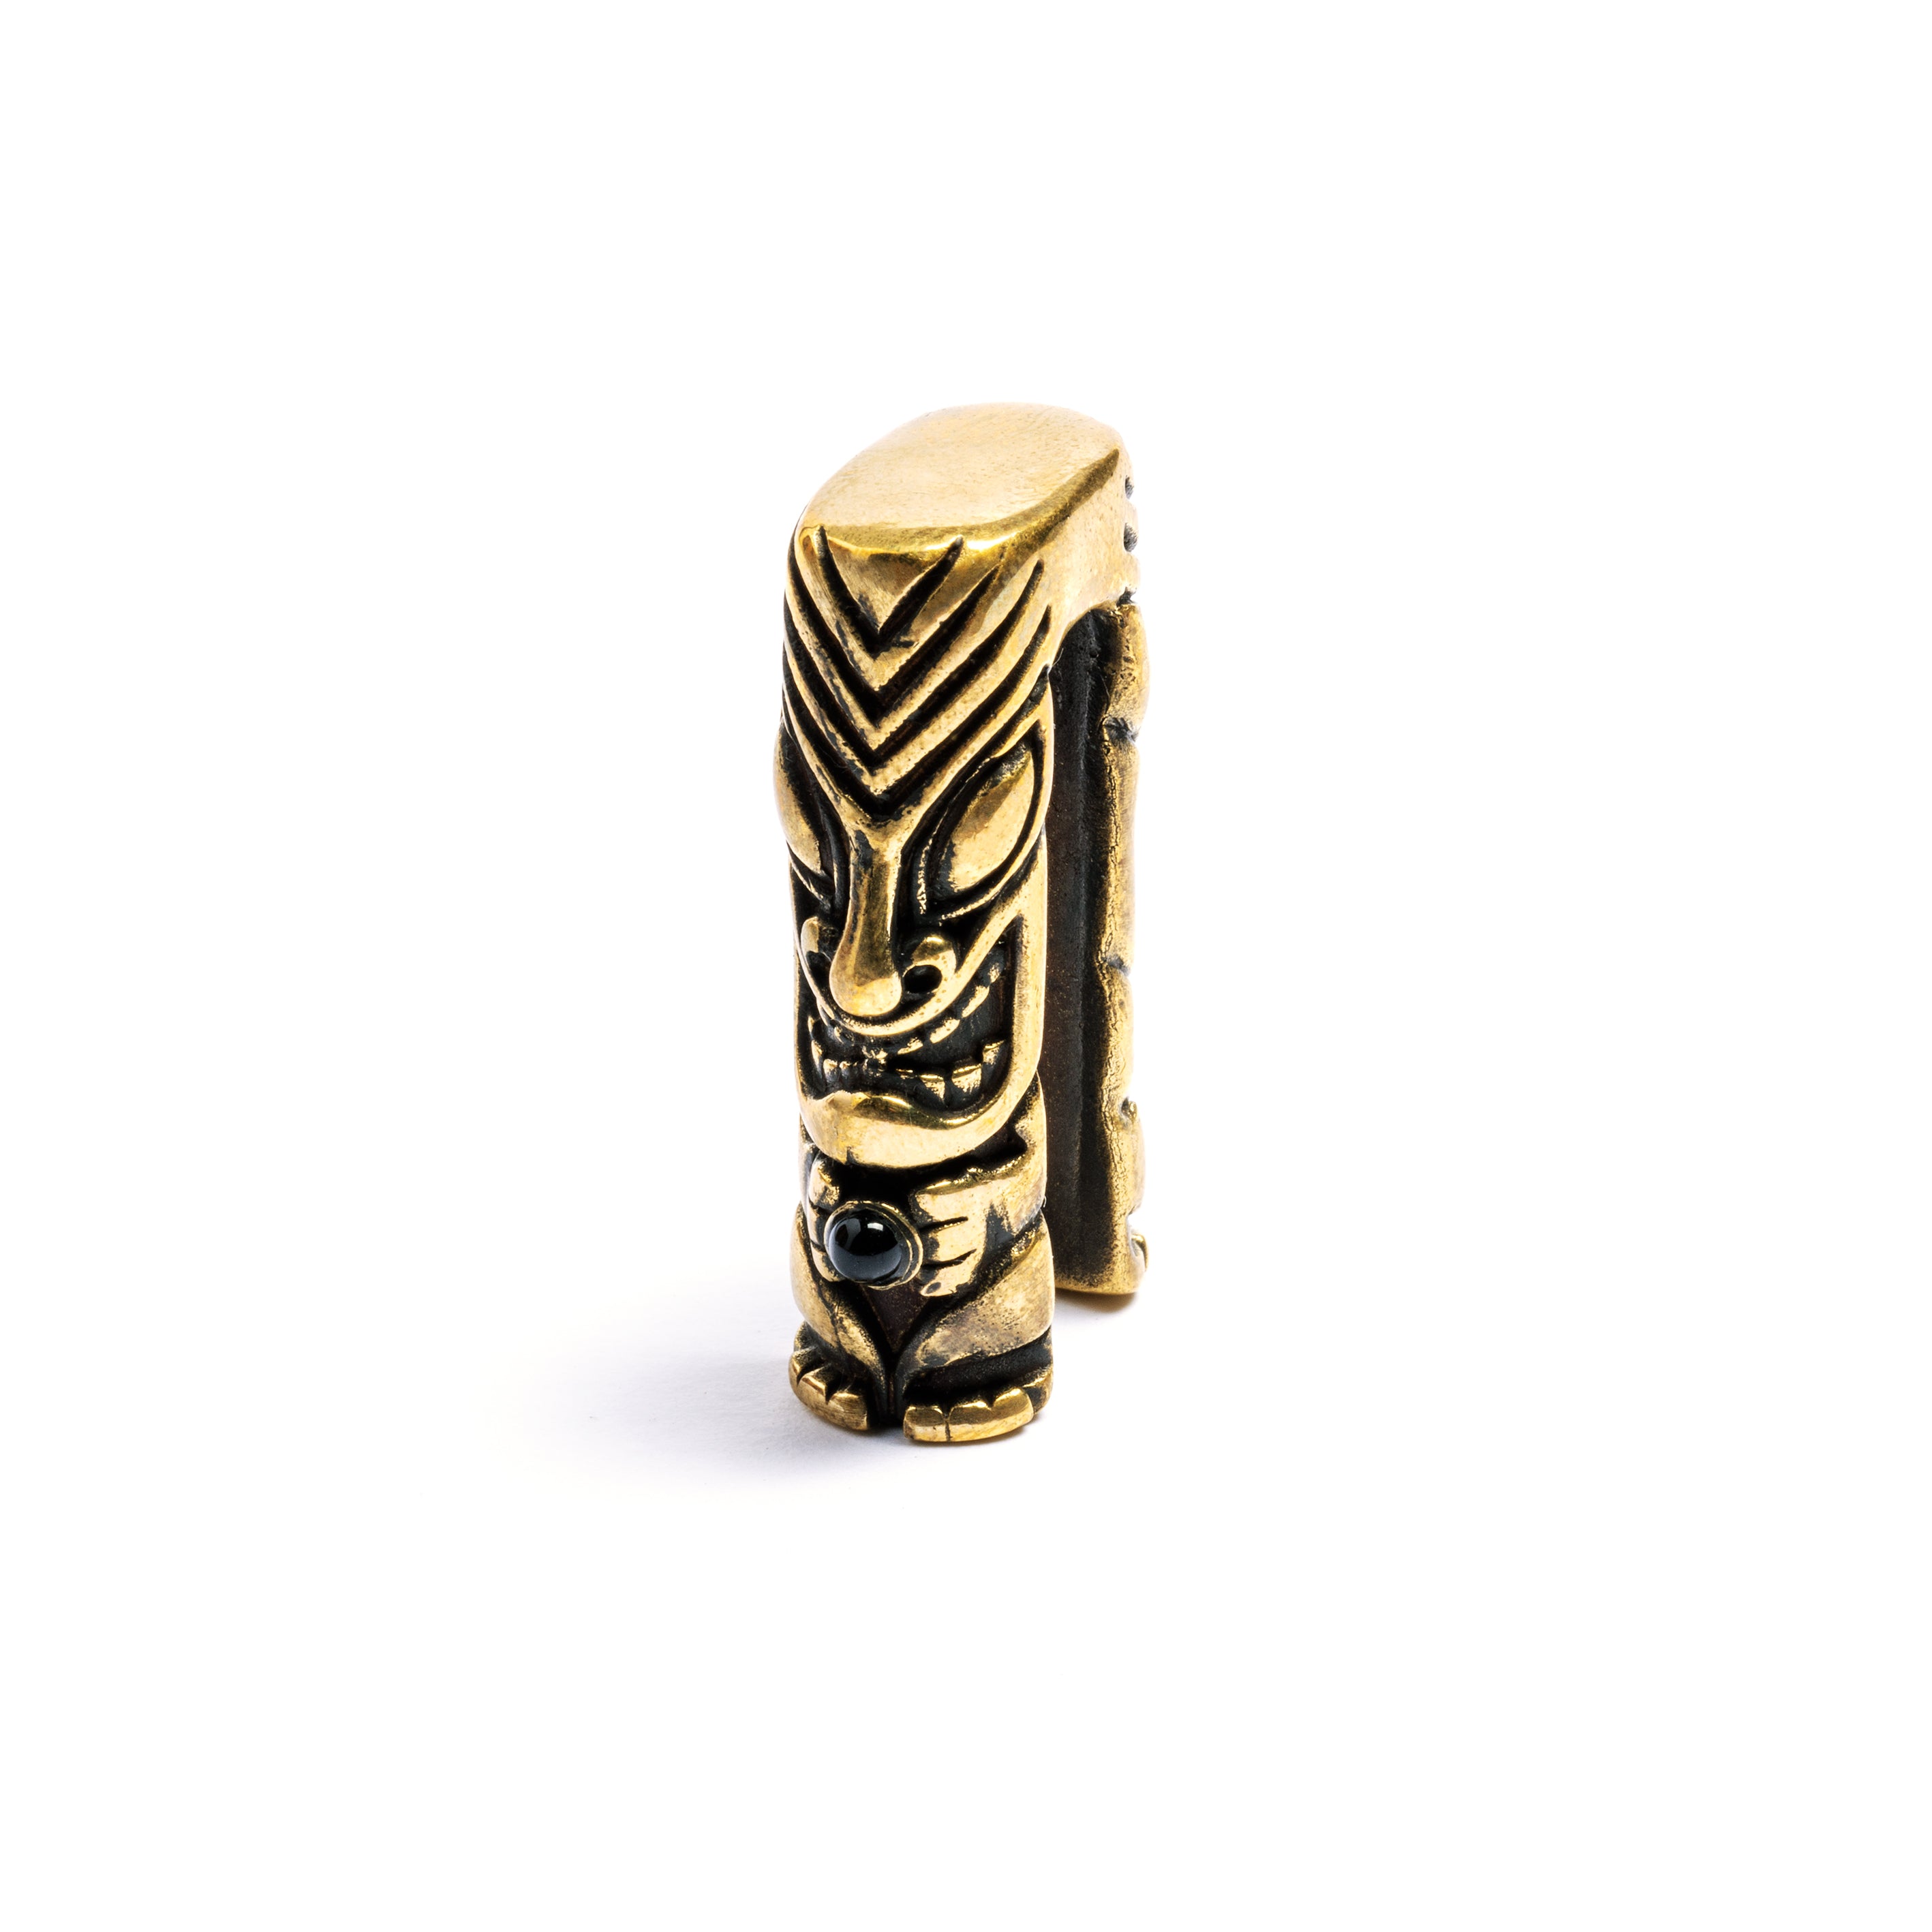 Tiki Brass Ear Weight with Onyx Stone